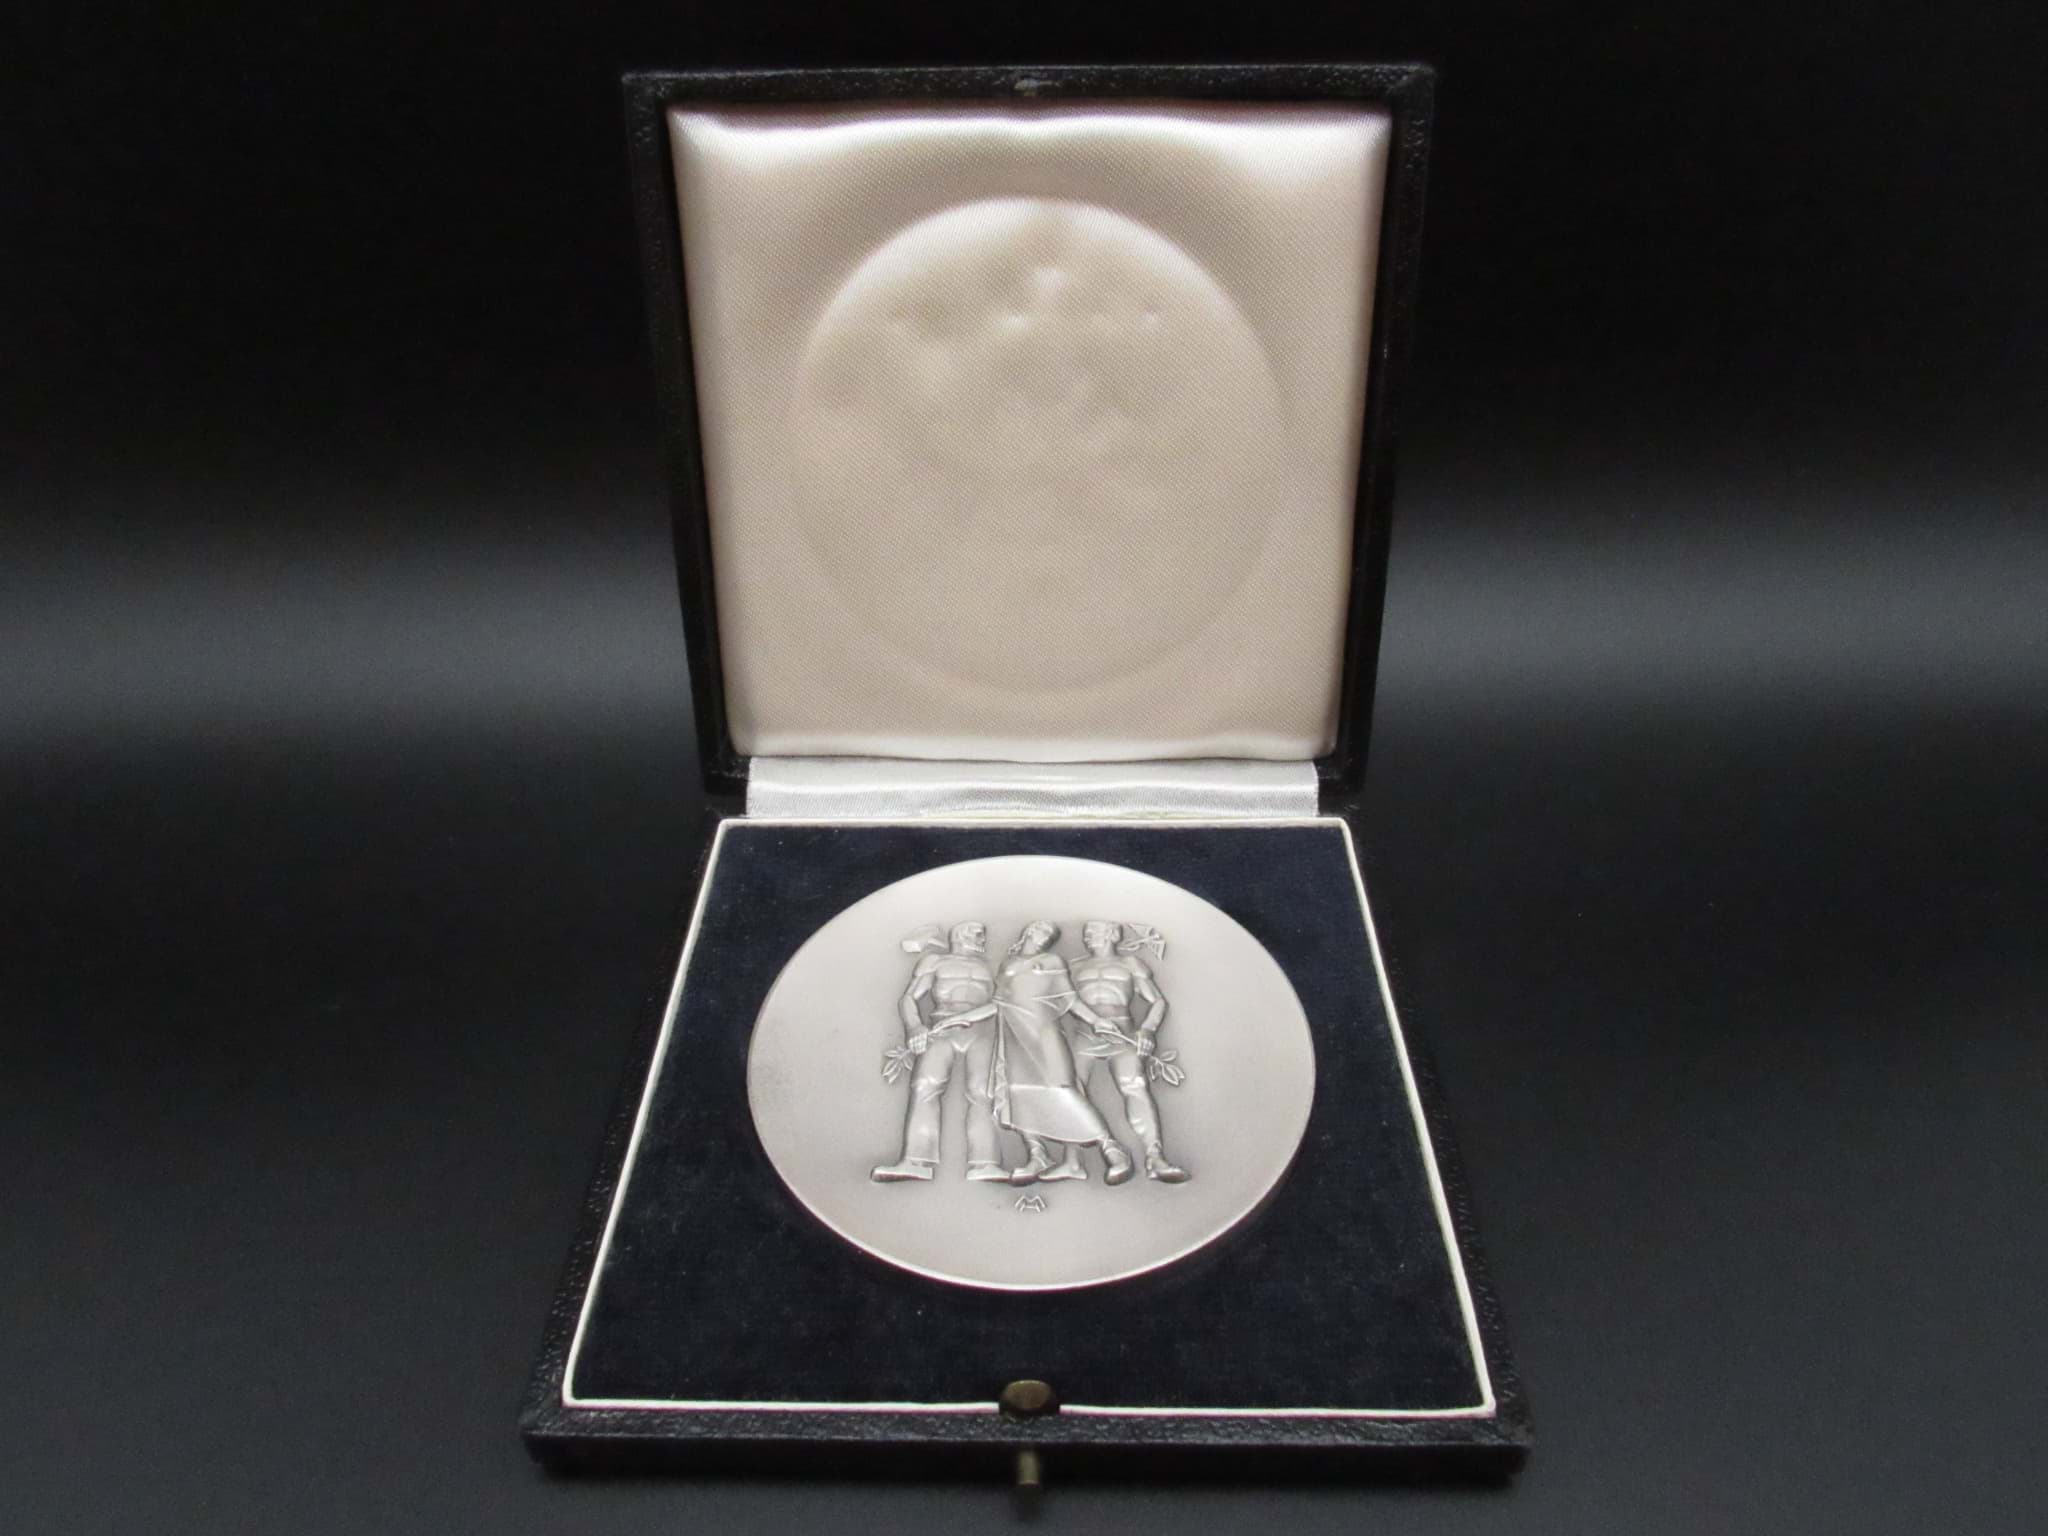 Bild av Wirtschafts-Medaille mit Etui-Schachtel, für langjährige Mitarbeit, Silberauszeichnung
